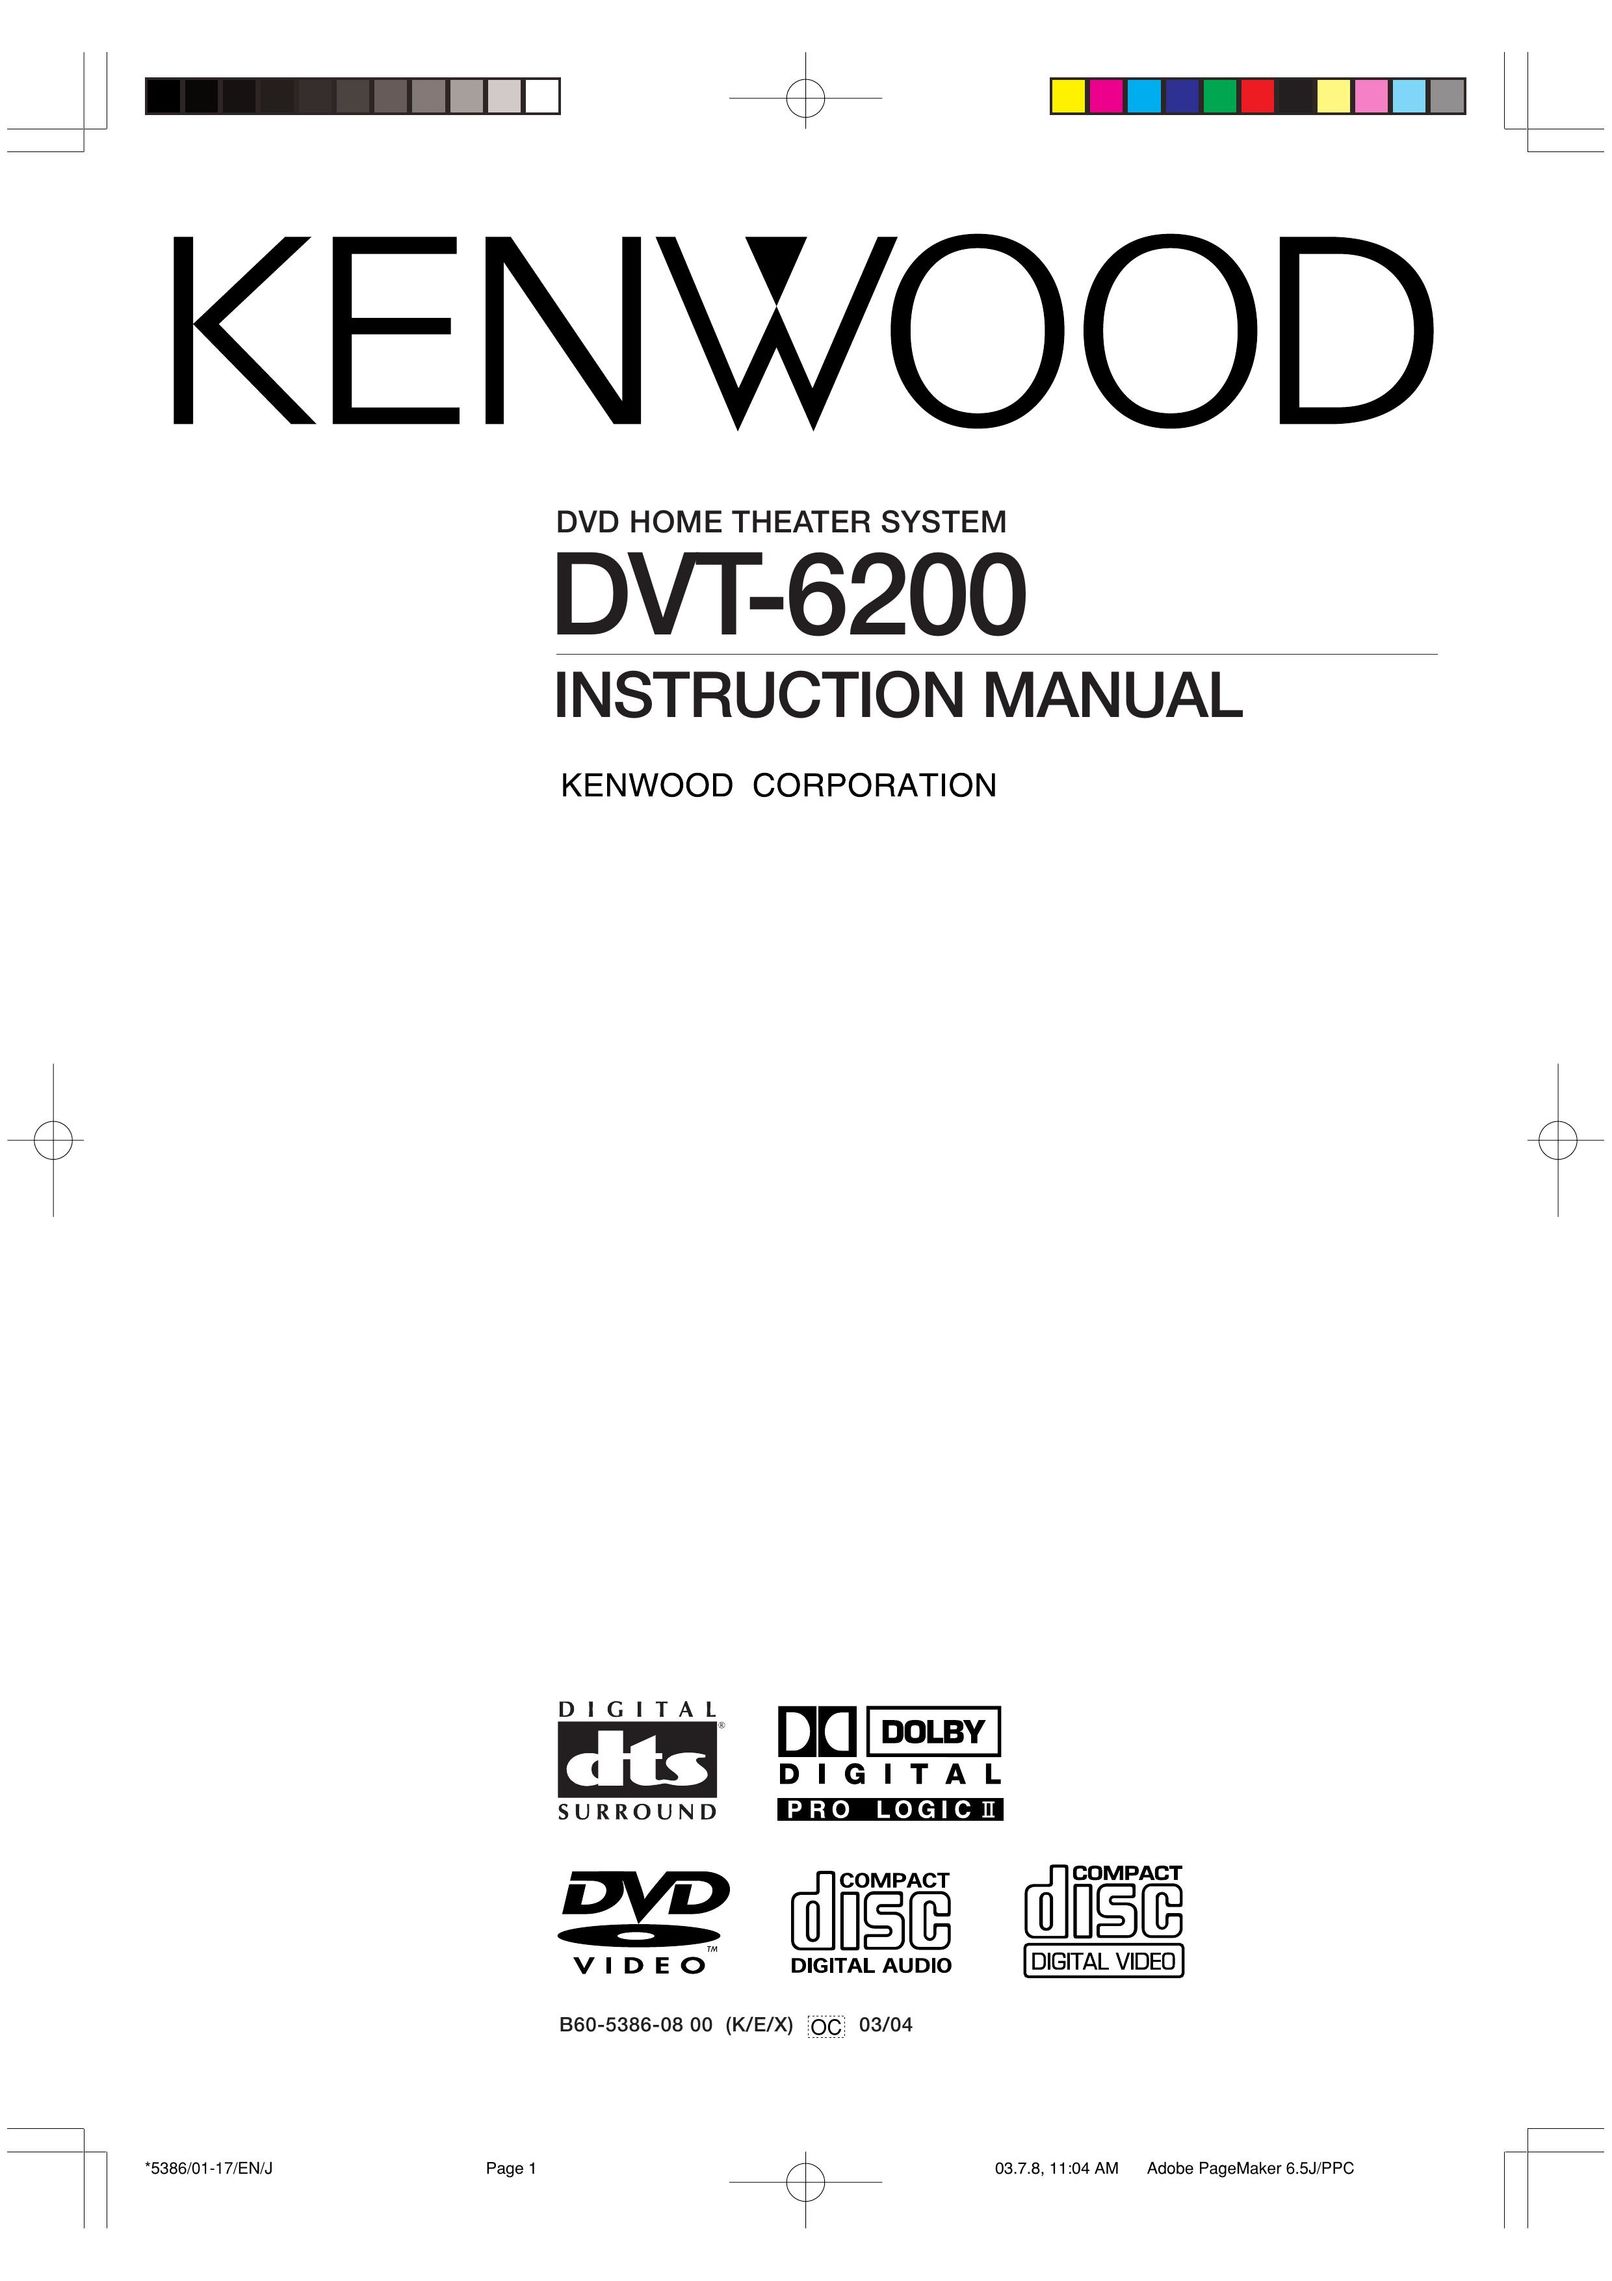 Kenwood DVT-6200 DVD Player User Manual